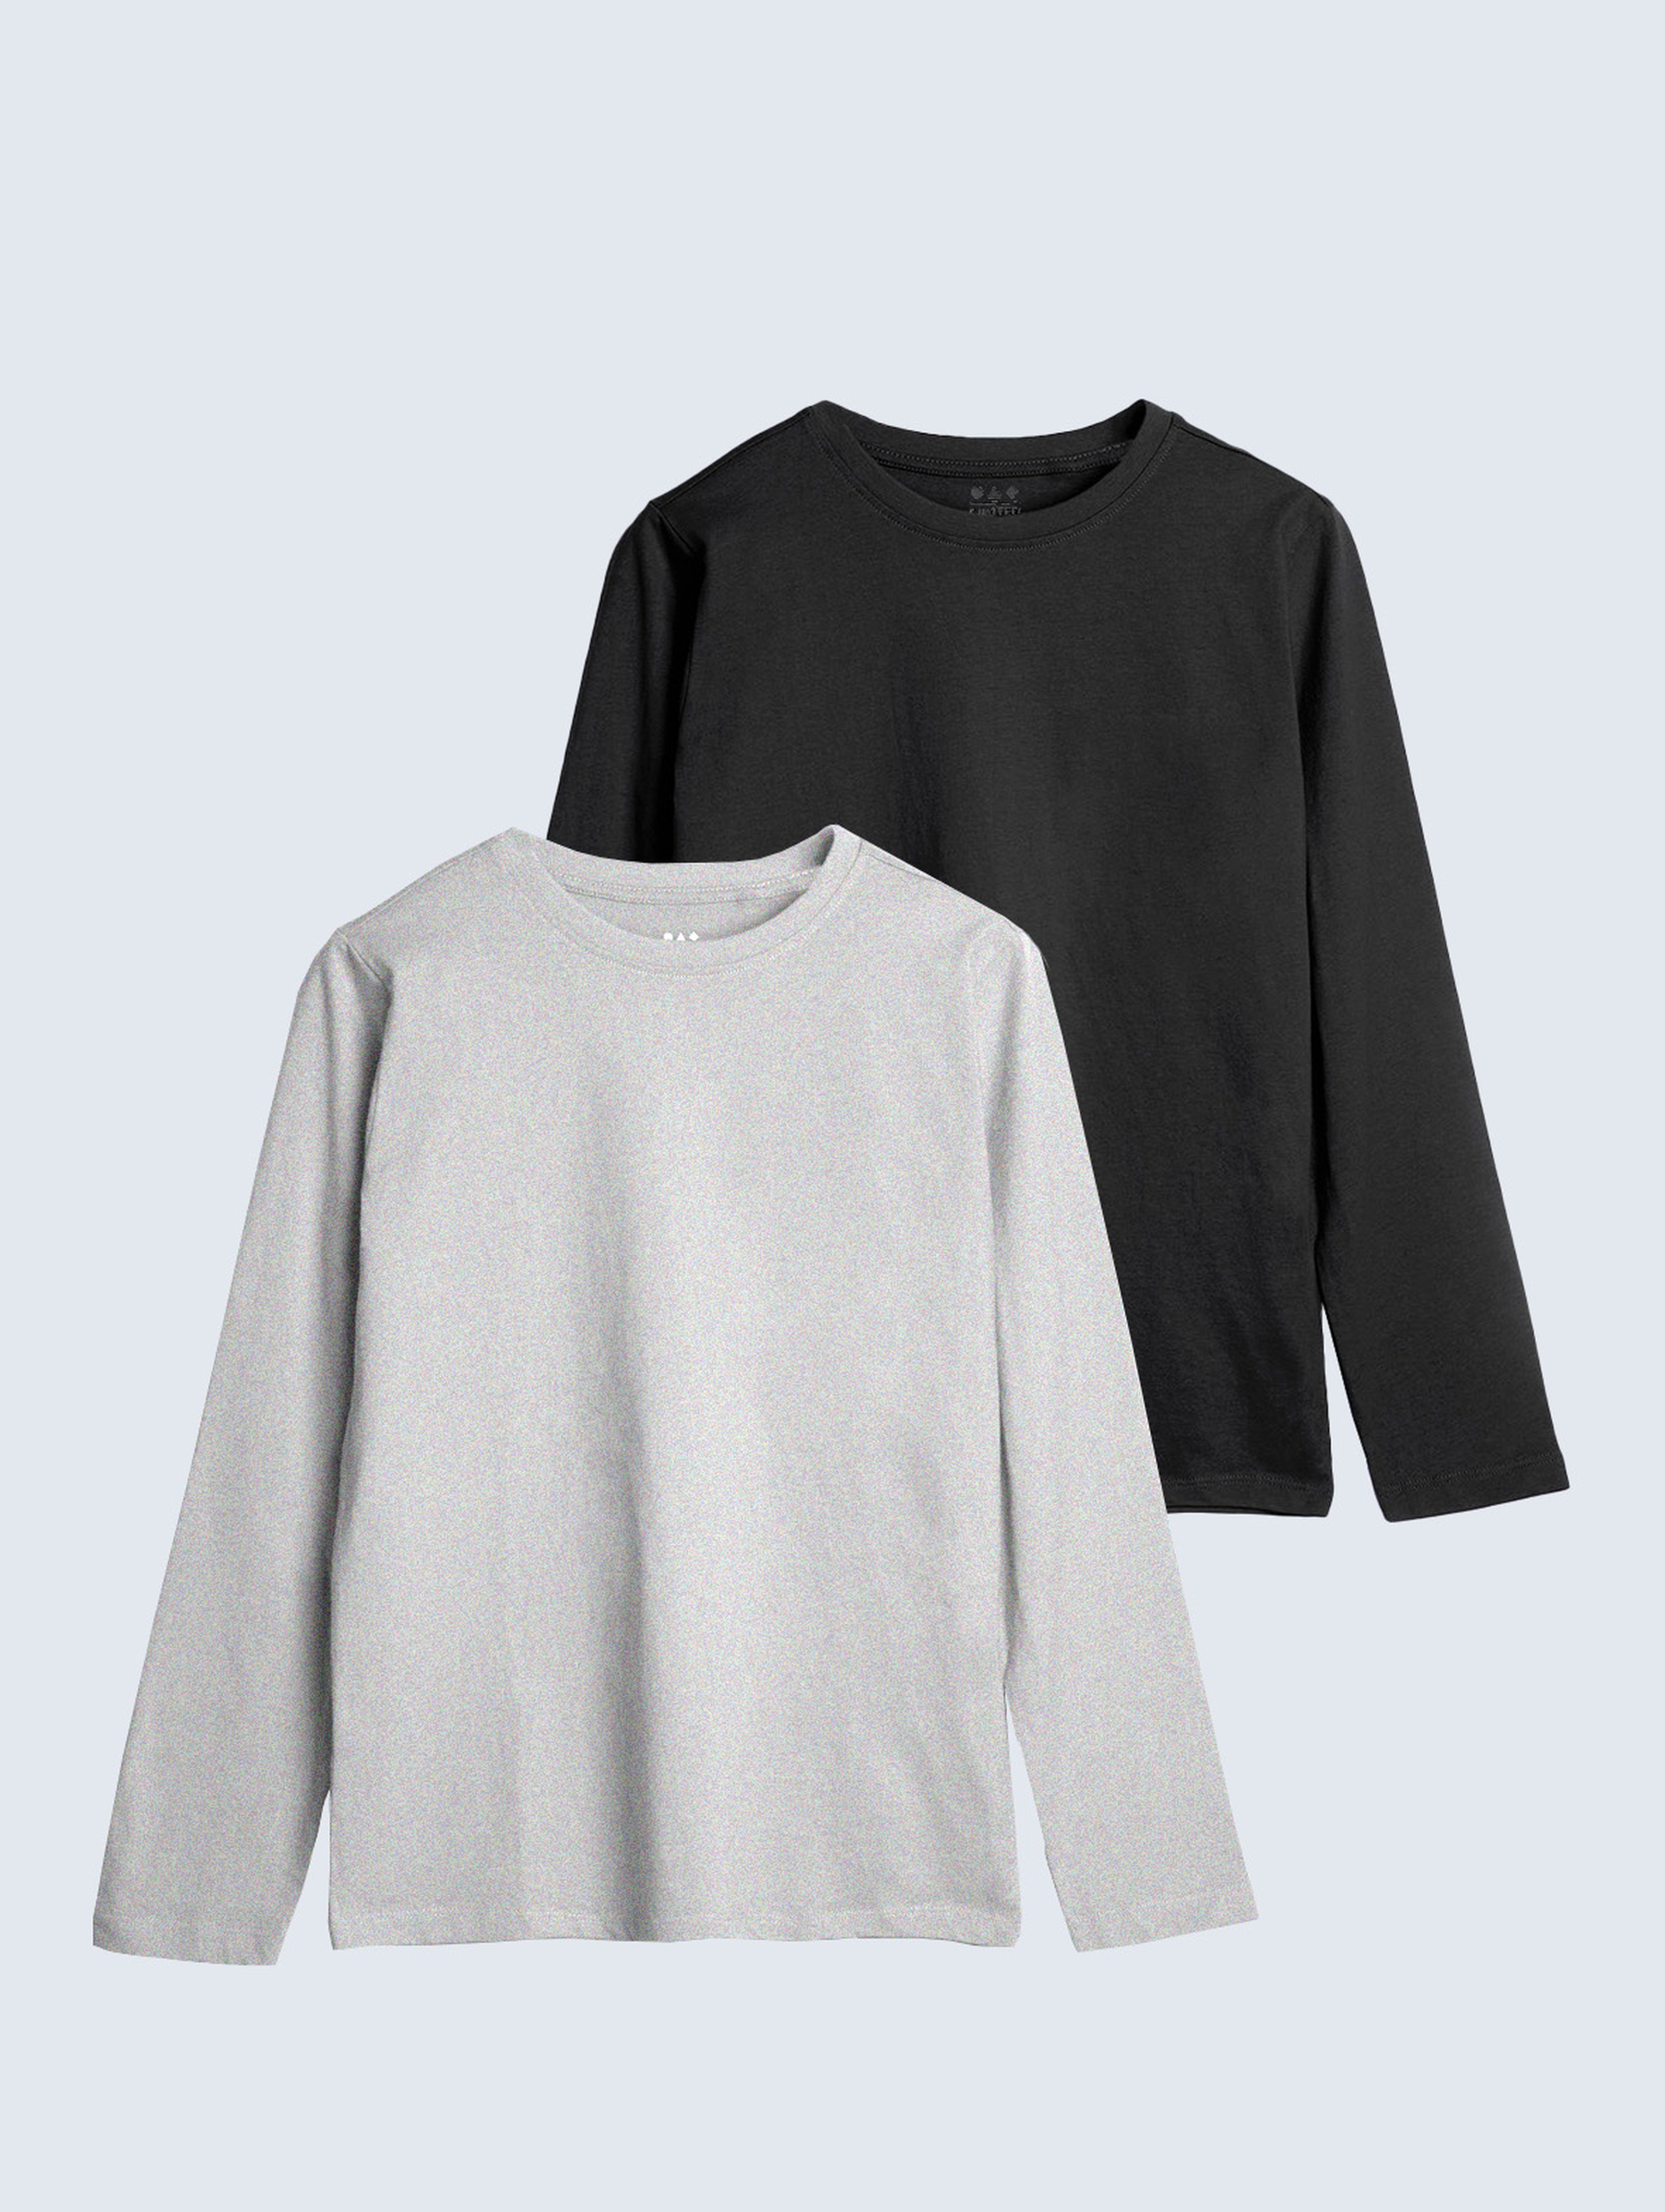 Szara i czarna bluzka dzianinowa z długim rękawem - unisex - Limited Edition